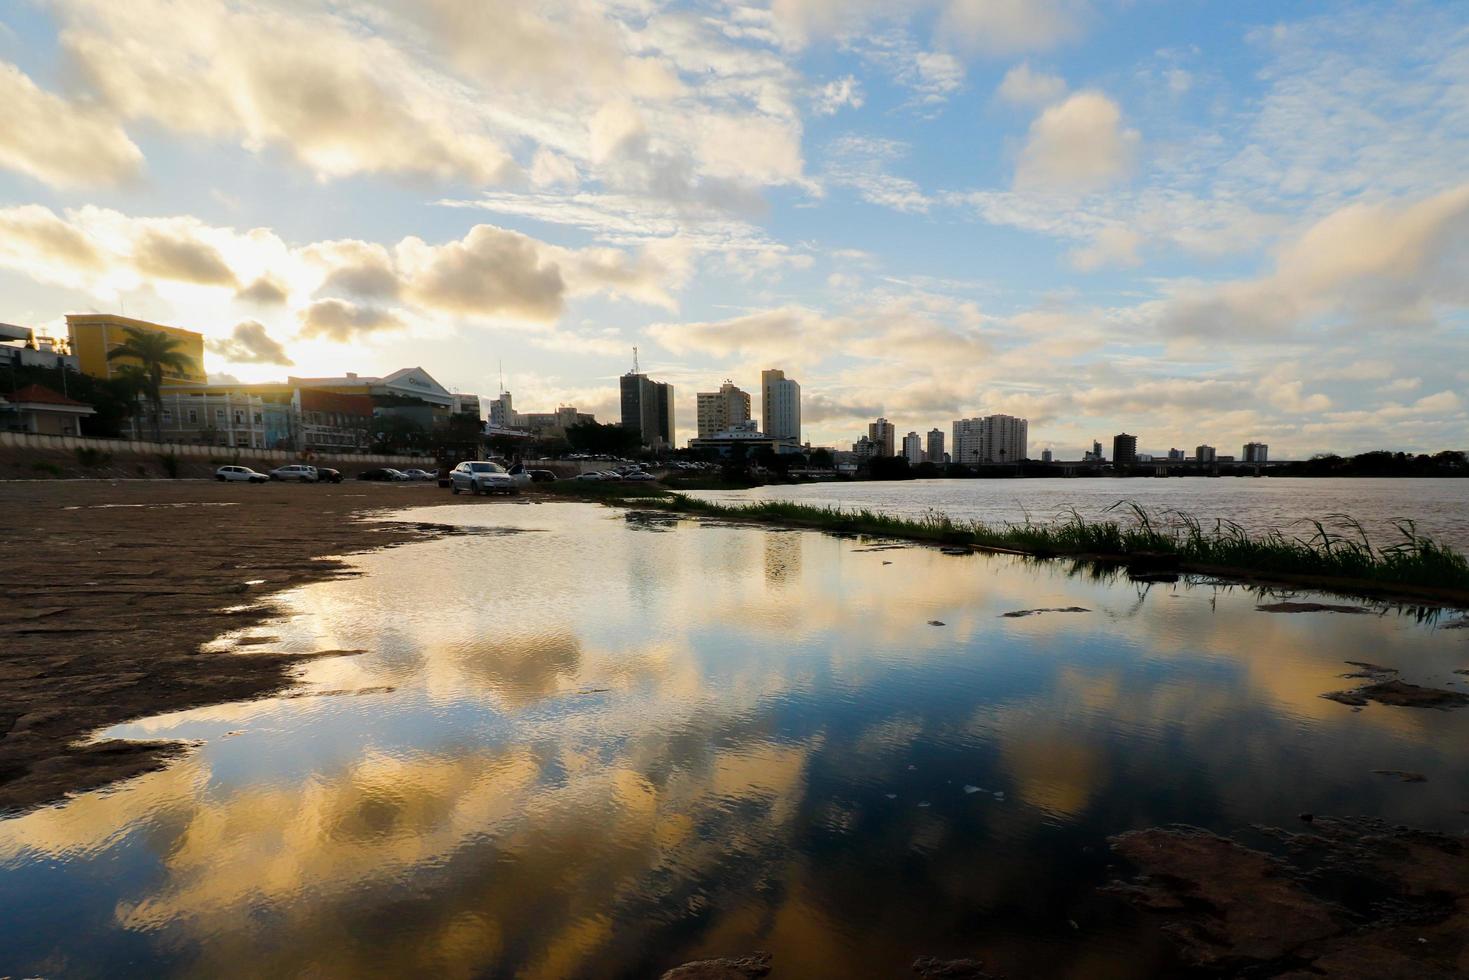 campos dos goytacazes, rj, brasil, 2021 - horizonte al atardecer junto al río paraiba foto